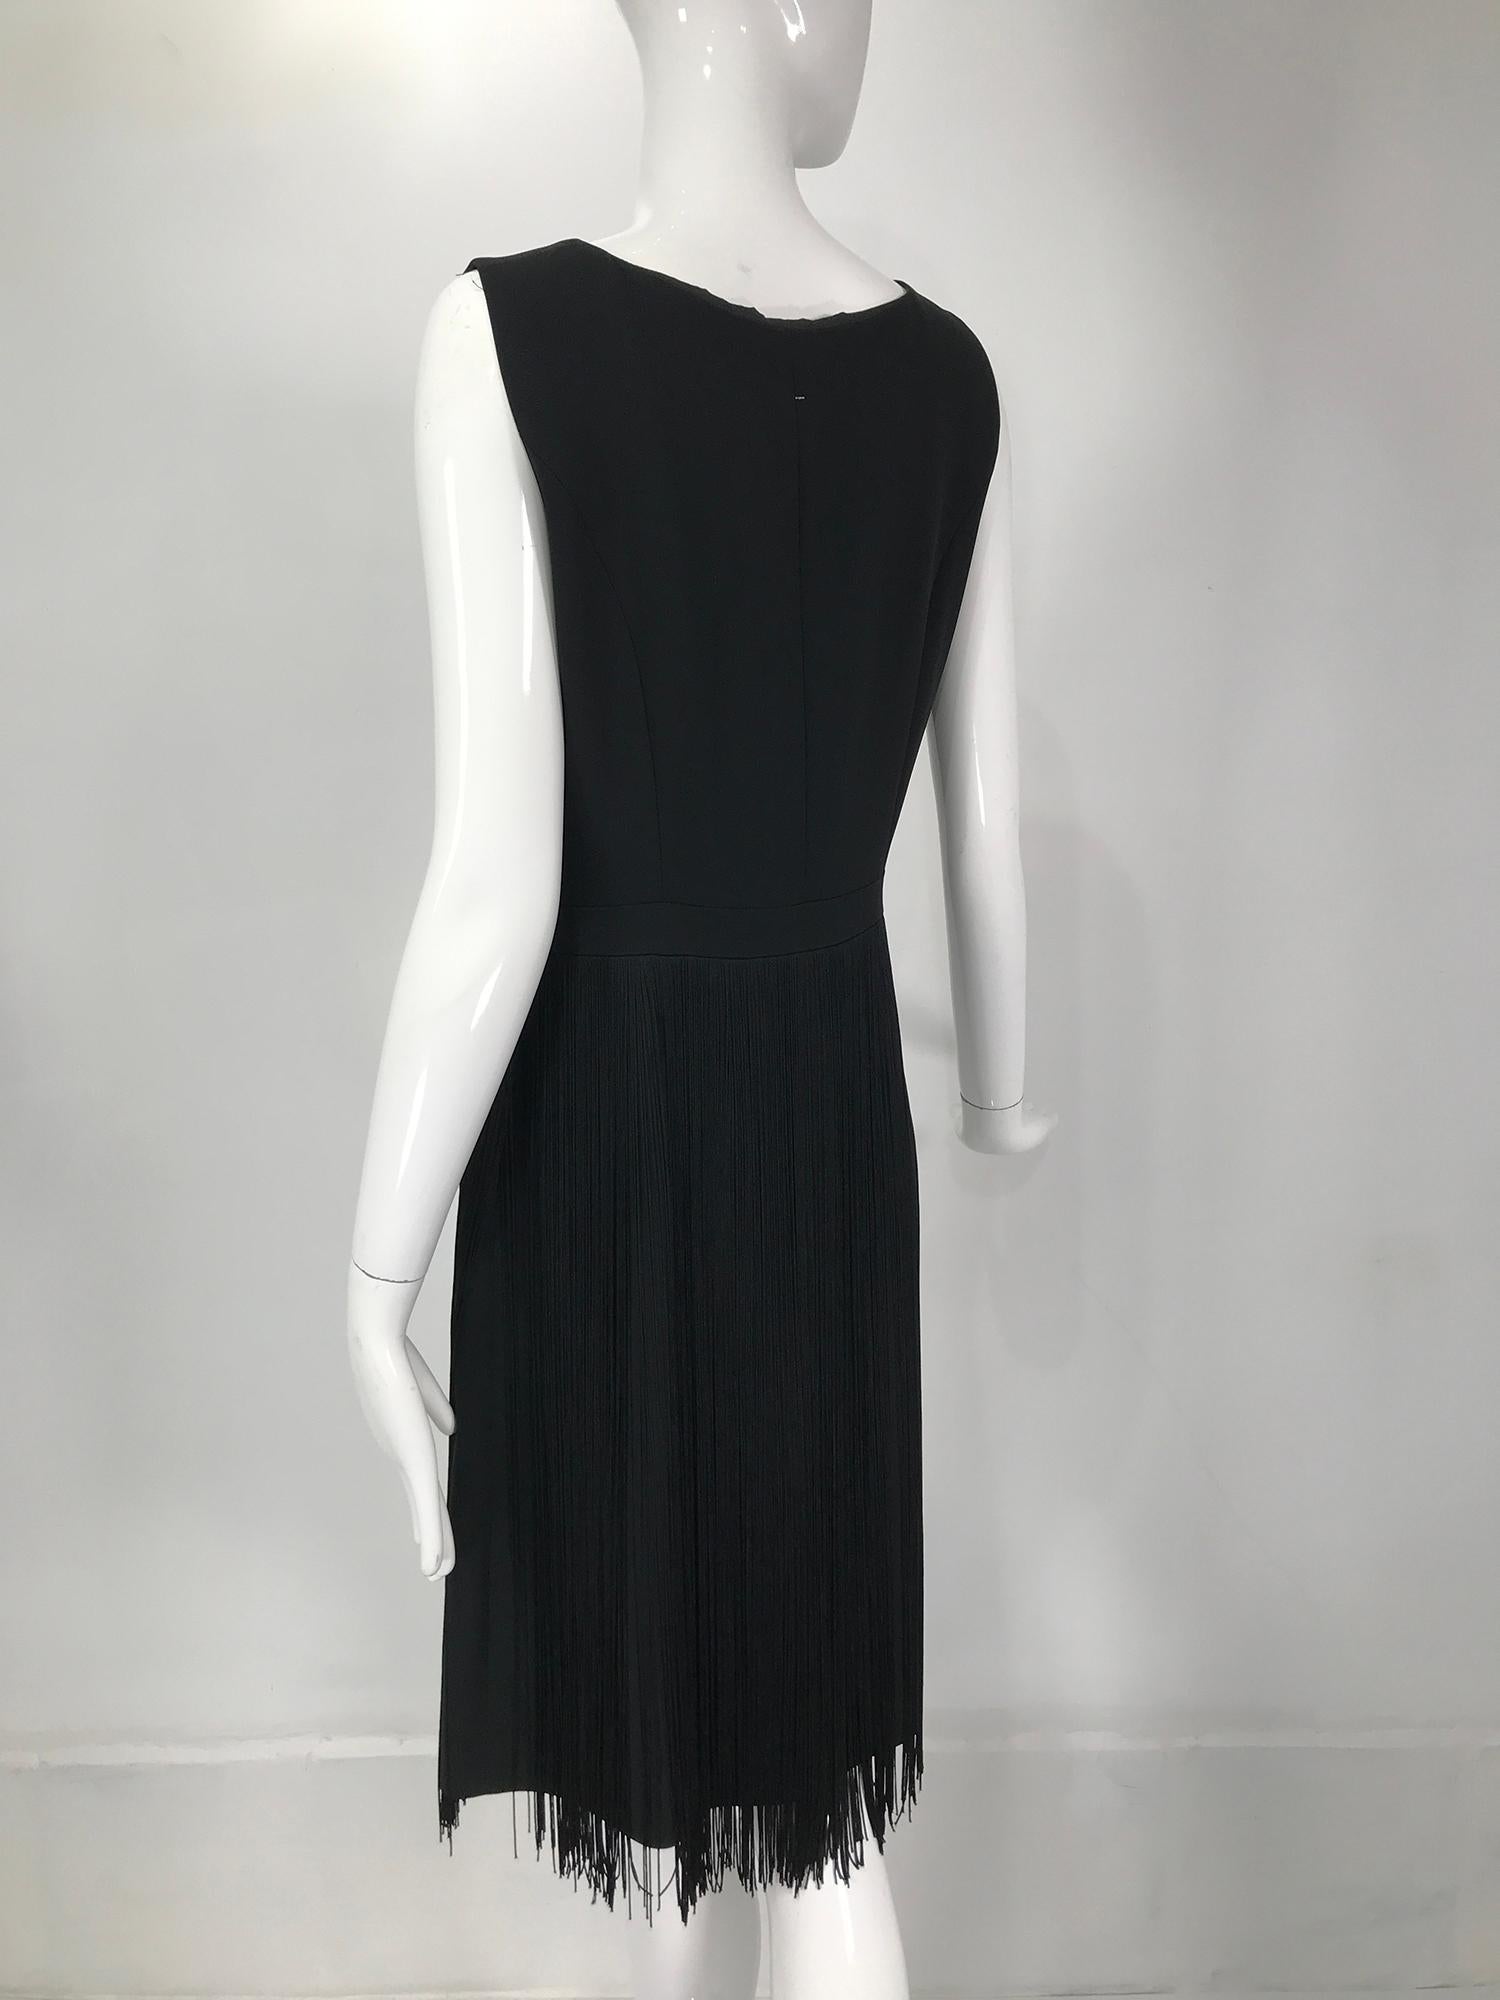 Moschino Sleeveless Black Crepe Bow Waist Fringe Skirt Dress 1990s For Sale 4